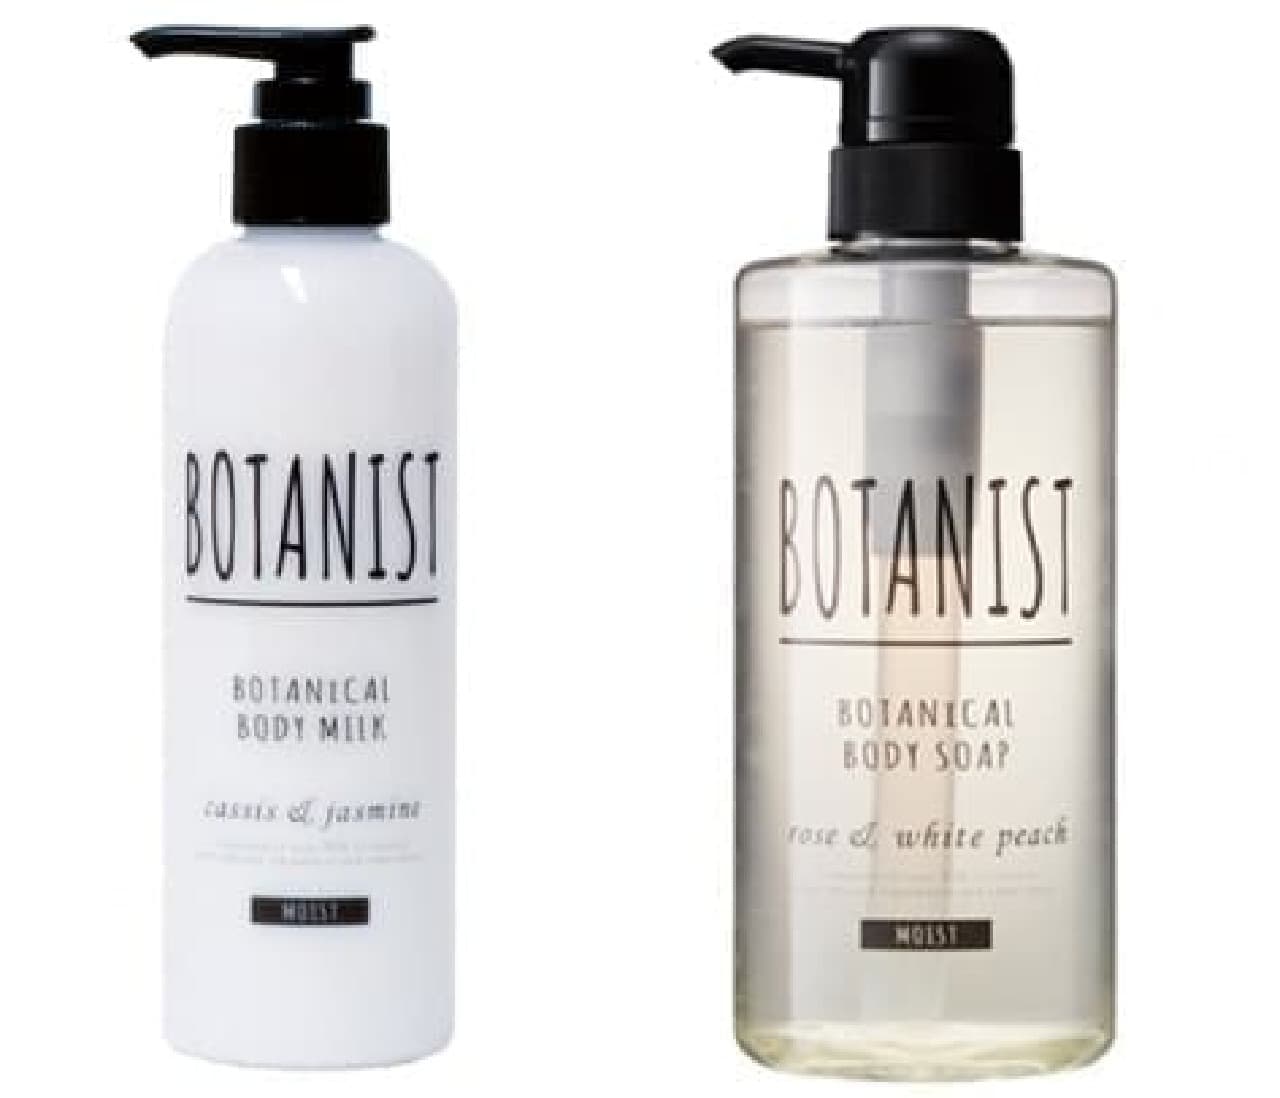 "BOTANIST" body soap